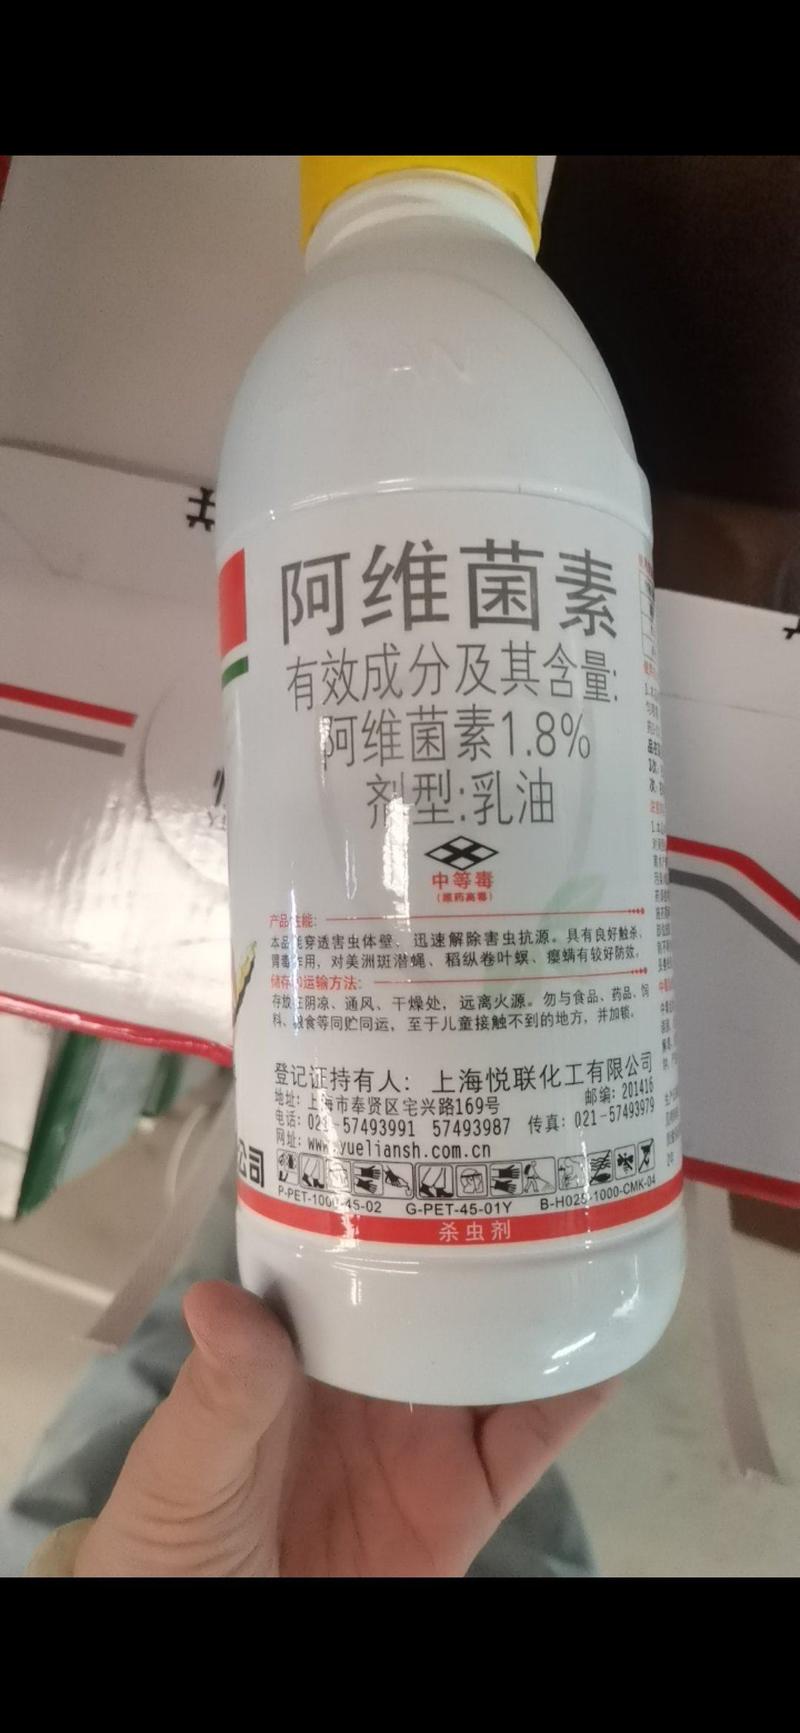 上海悦联虫螨克阿维菌素1.8%美洲斑潜蝇稻纵卷叶螟杀虫杀